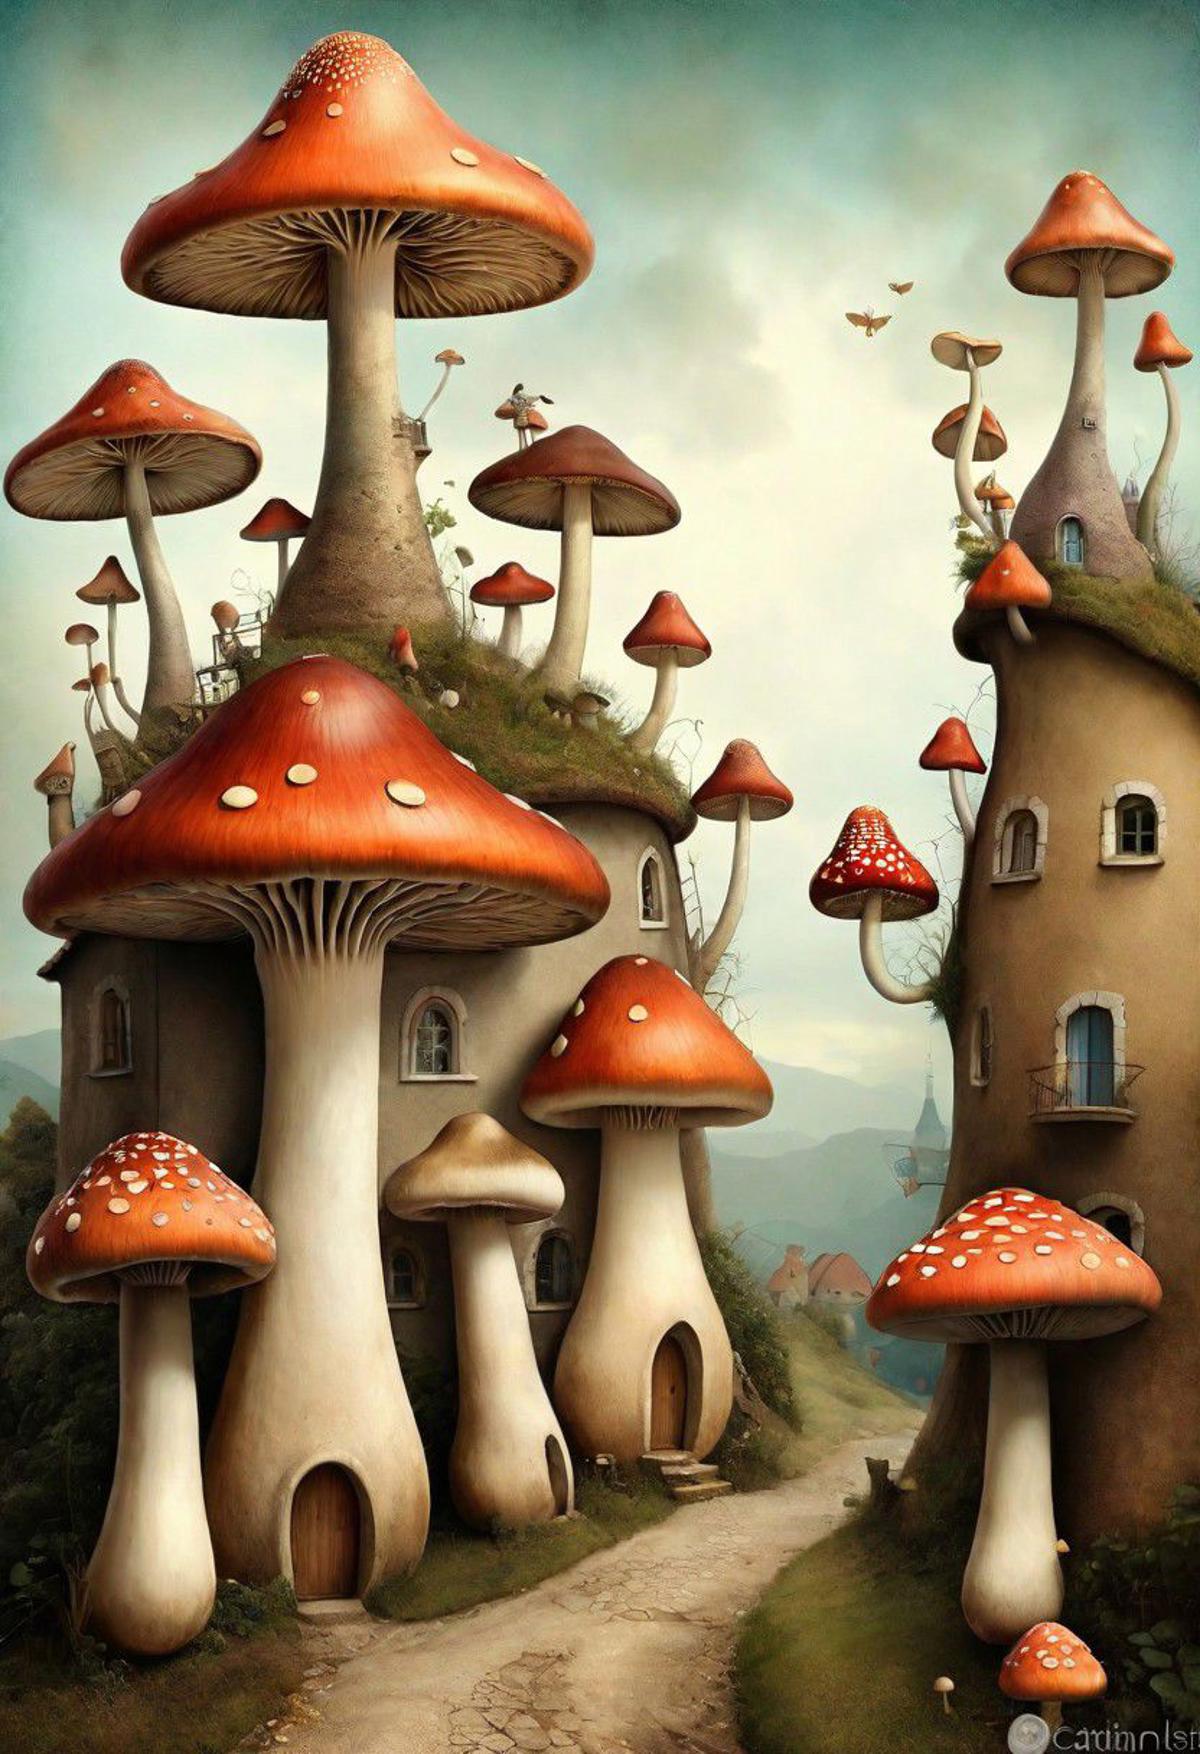 Surrealist Wonderland - surreal00d image by TataMata